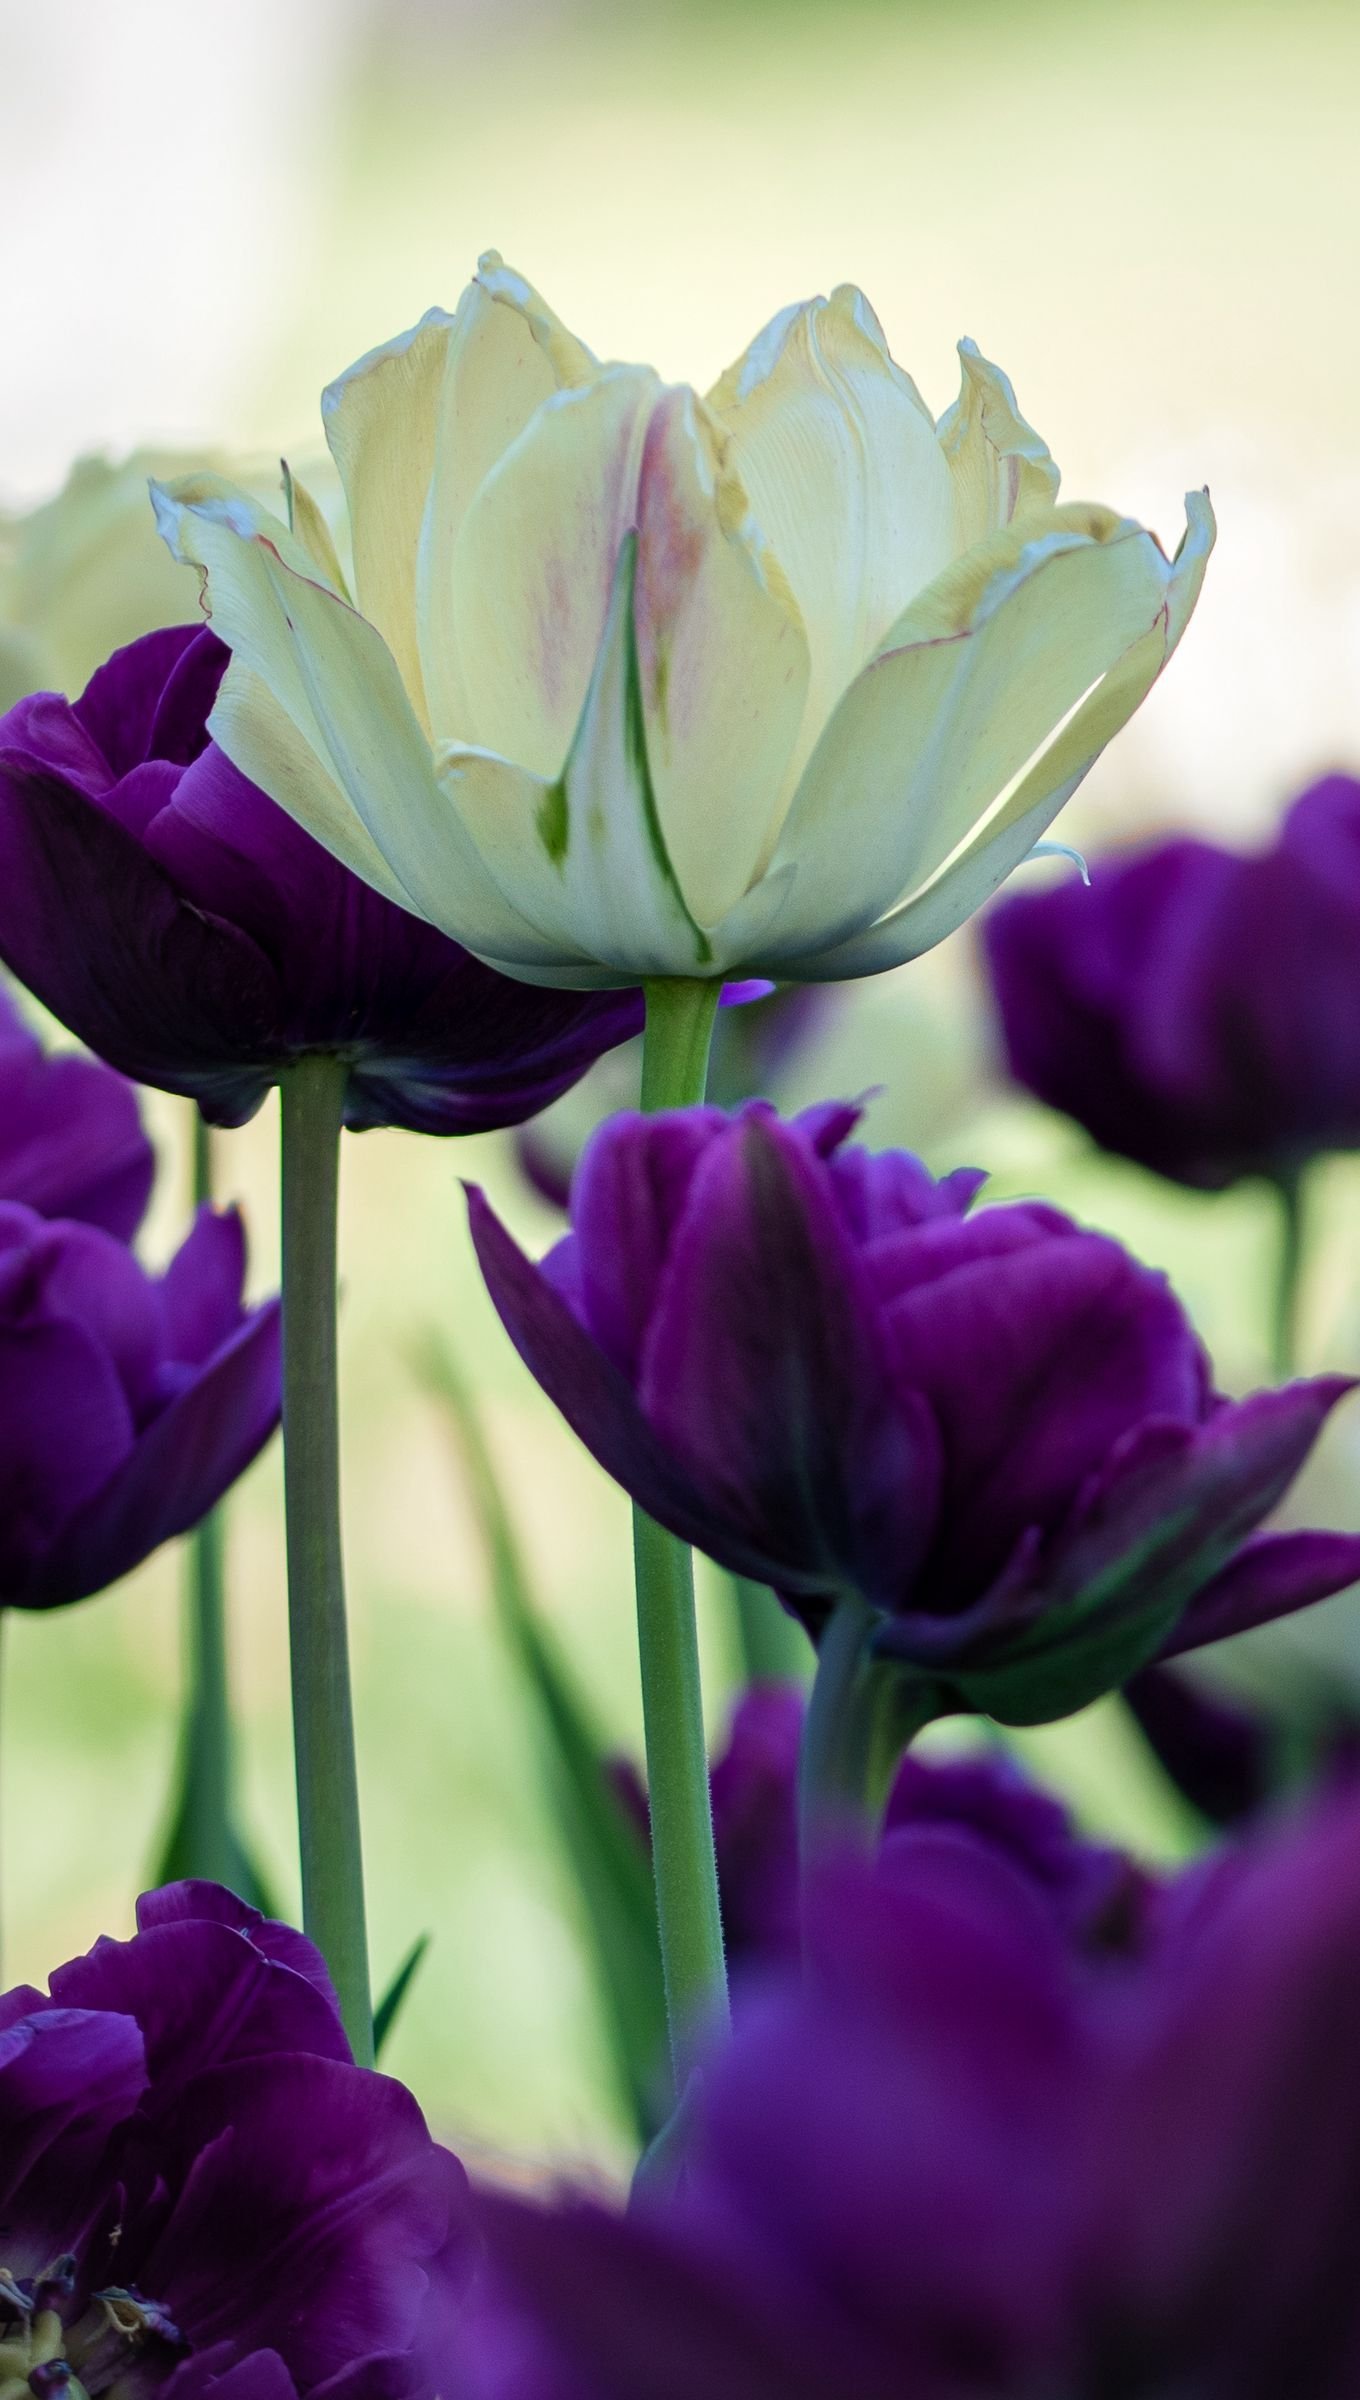 Fondos de pantalla Tulipanes morados y blancos Vertical